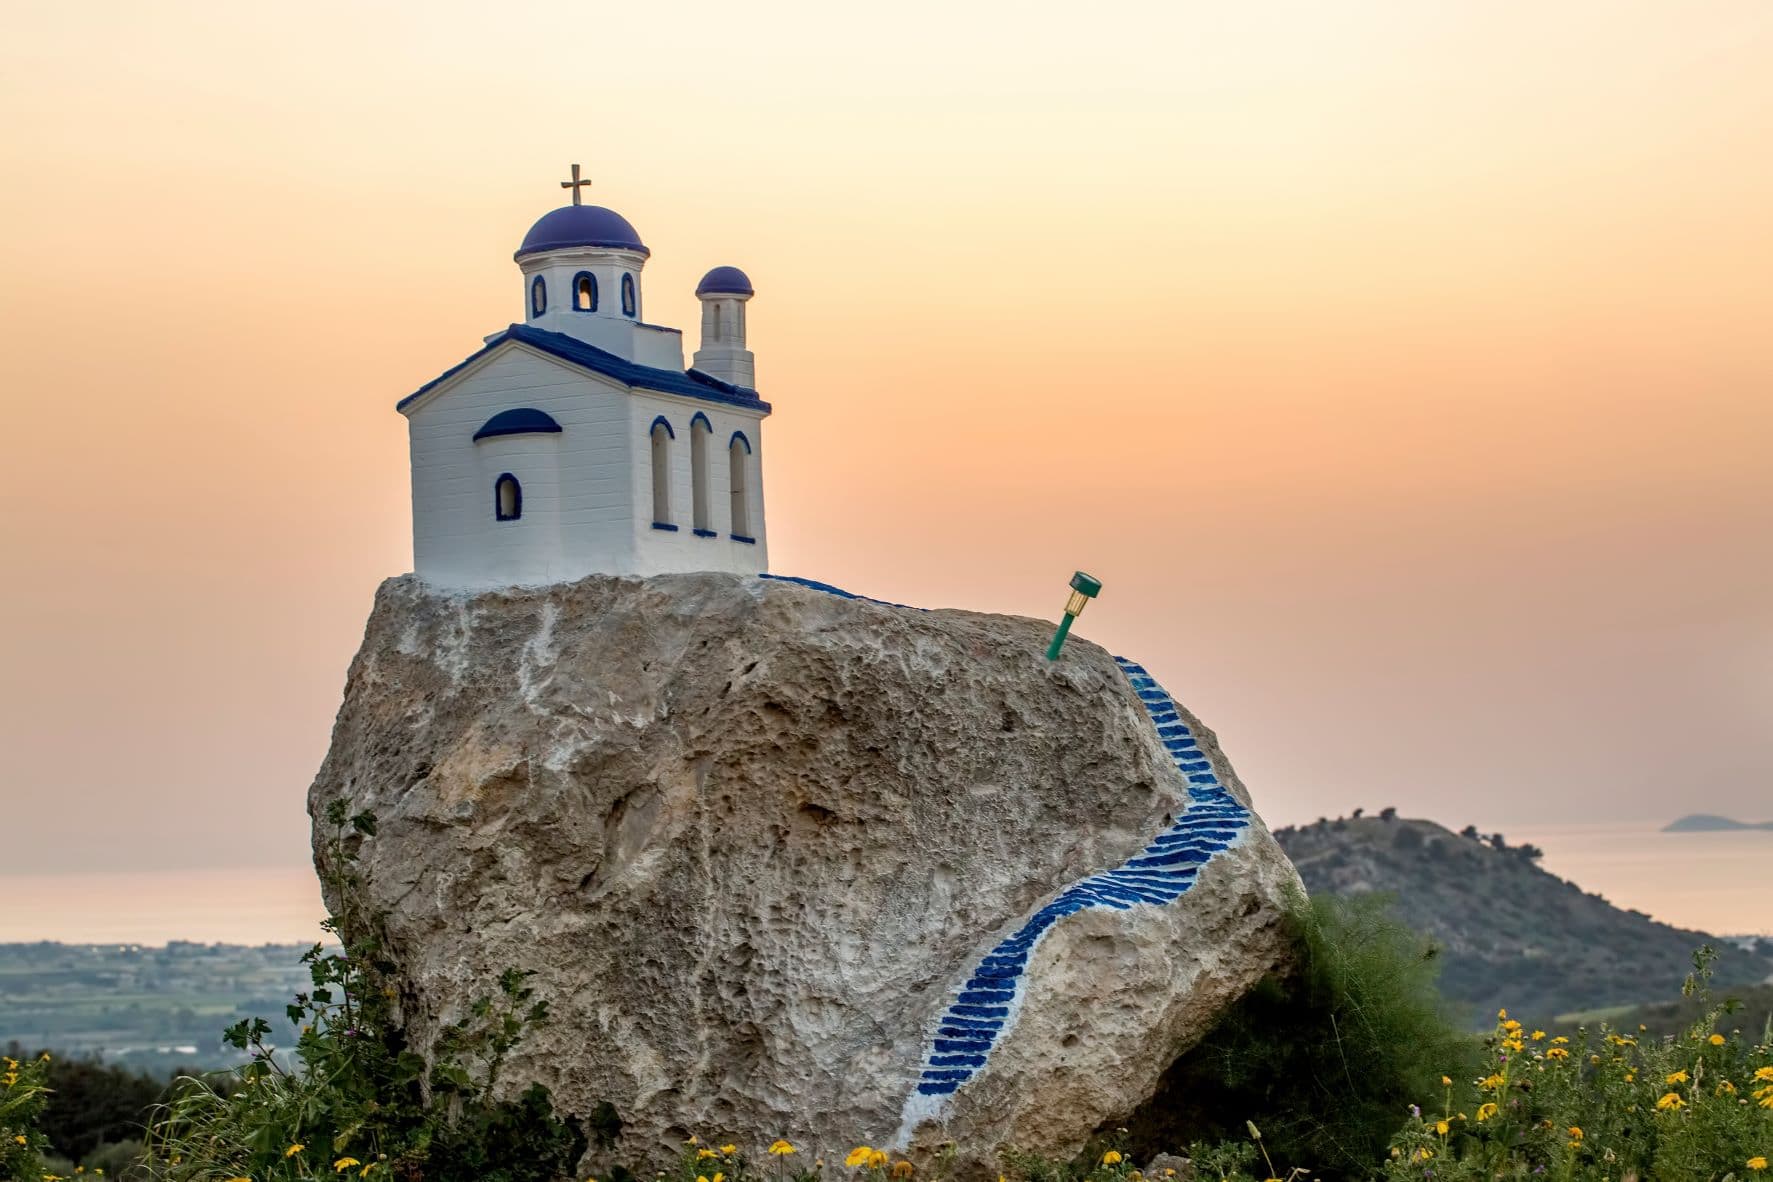 Kapelle auf einem Felsen im Dorf Zia auf der Insel Kos in der Ägäis